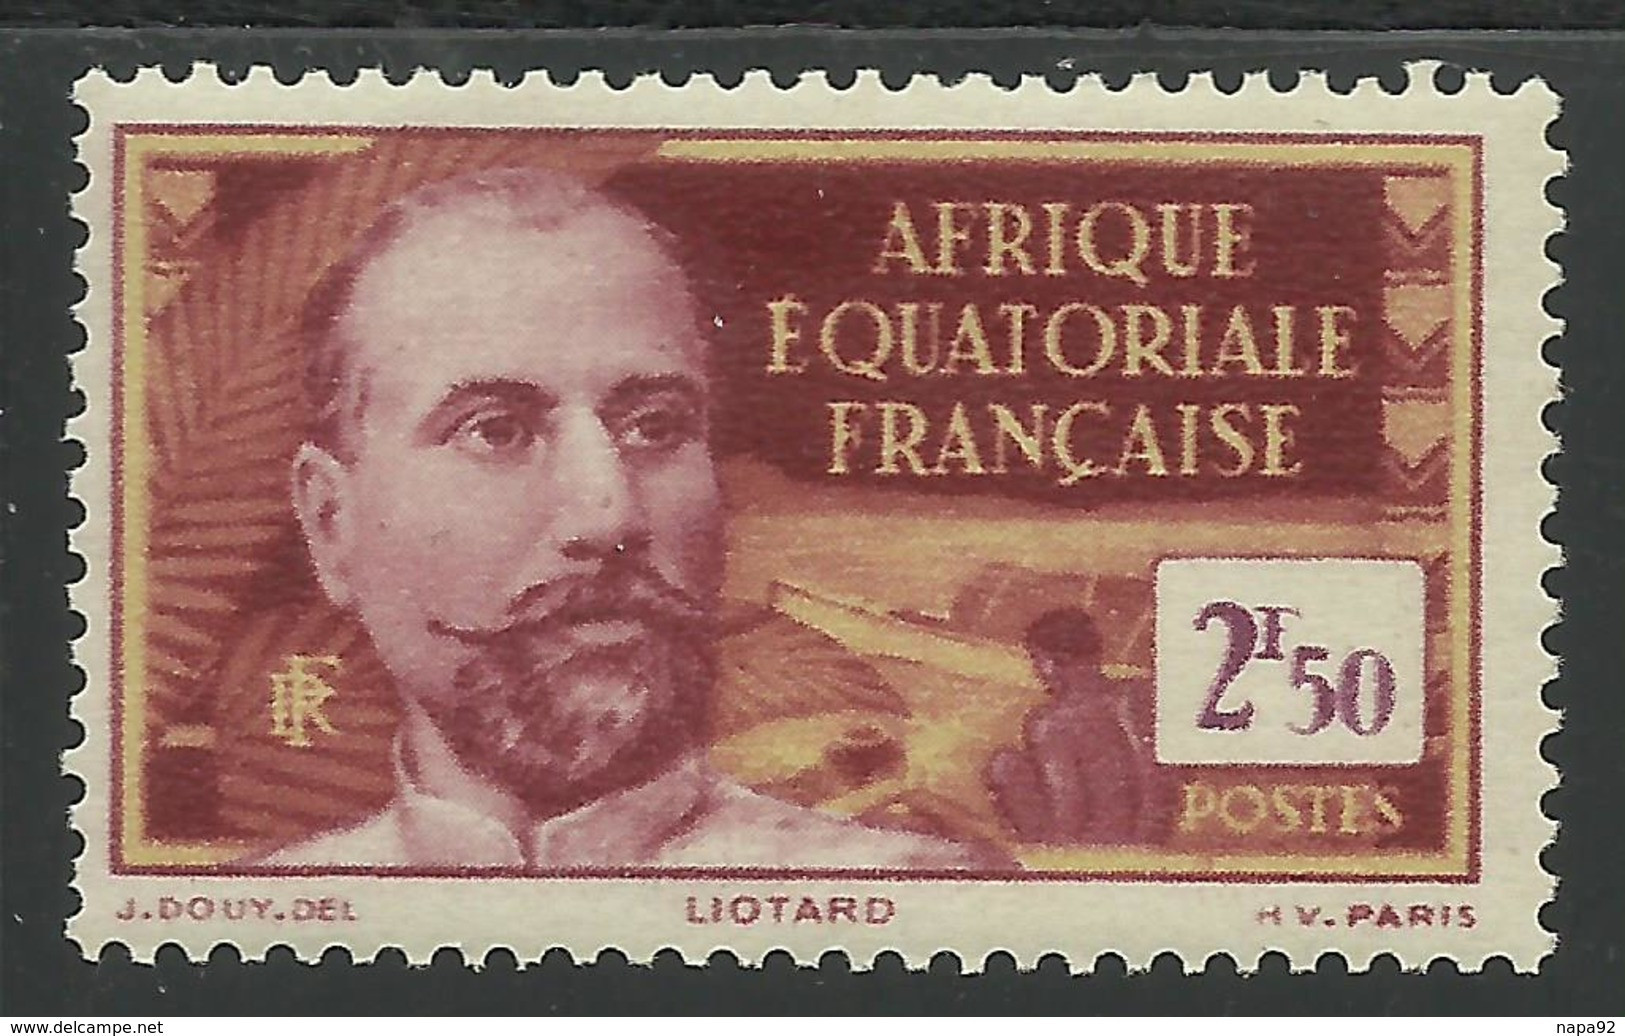 AFRIQUE EQUATORIALE FRANCAISE - AEF - A.E.F. - 1939 - YT 86** - MNH - Ungebraucht